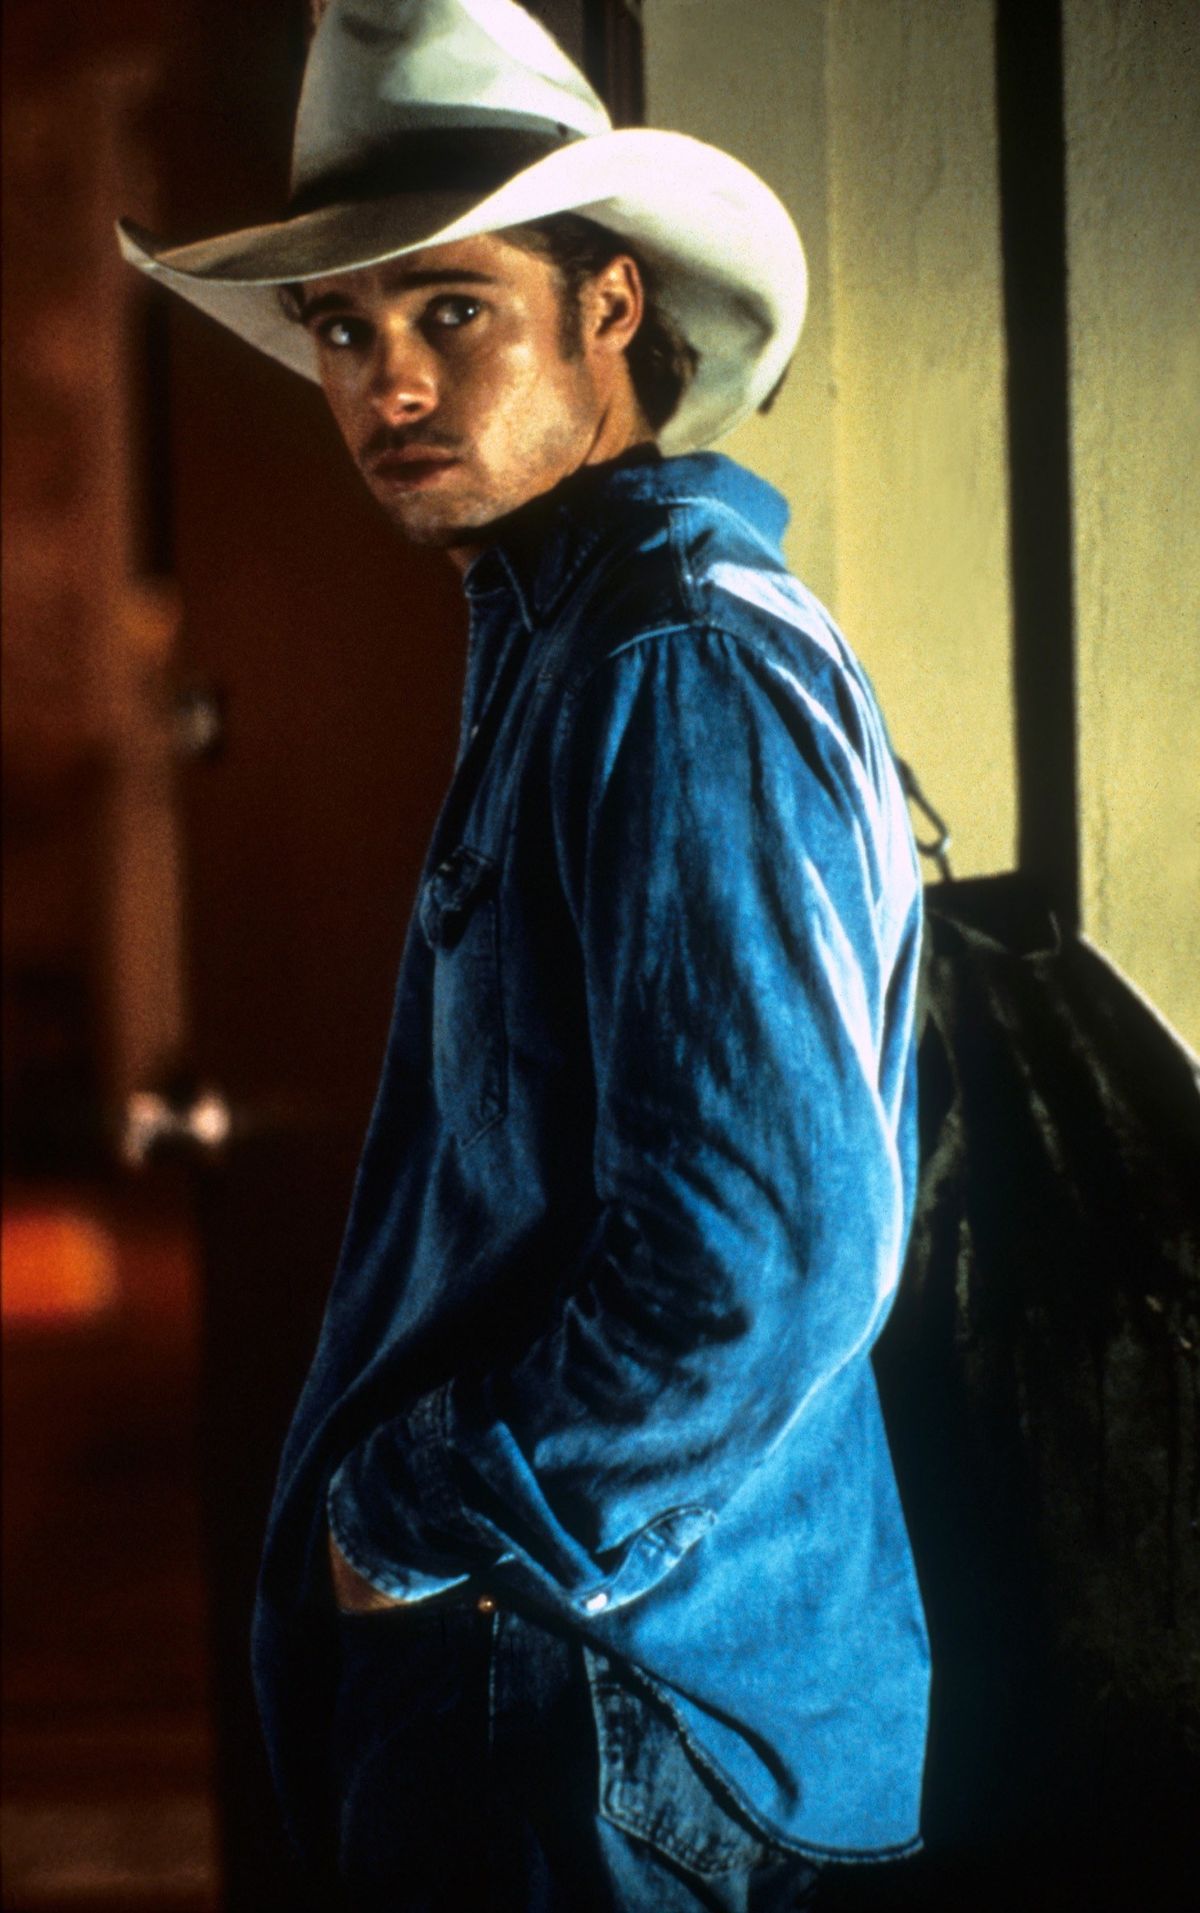 ბრედ პიტი არის გმირი მსახიობი, რომელიც ხაფანგშია კინოვარსკვლავის სხეულში